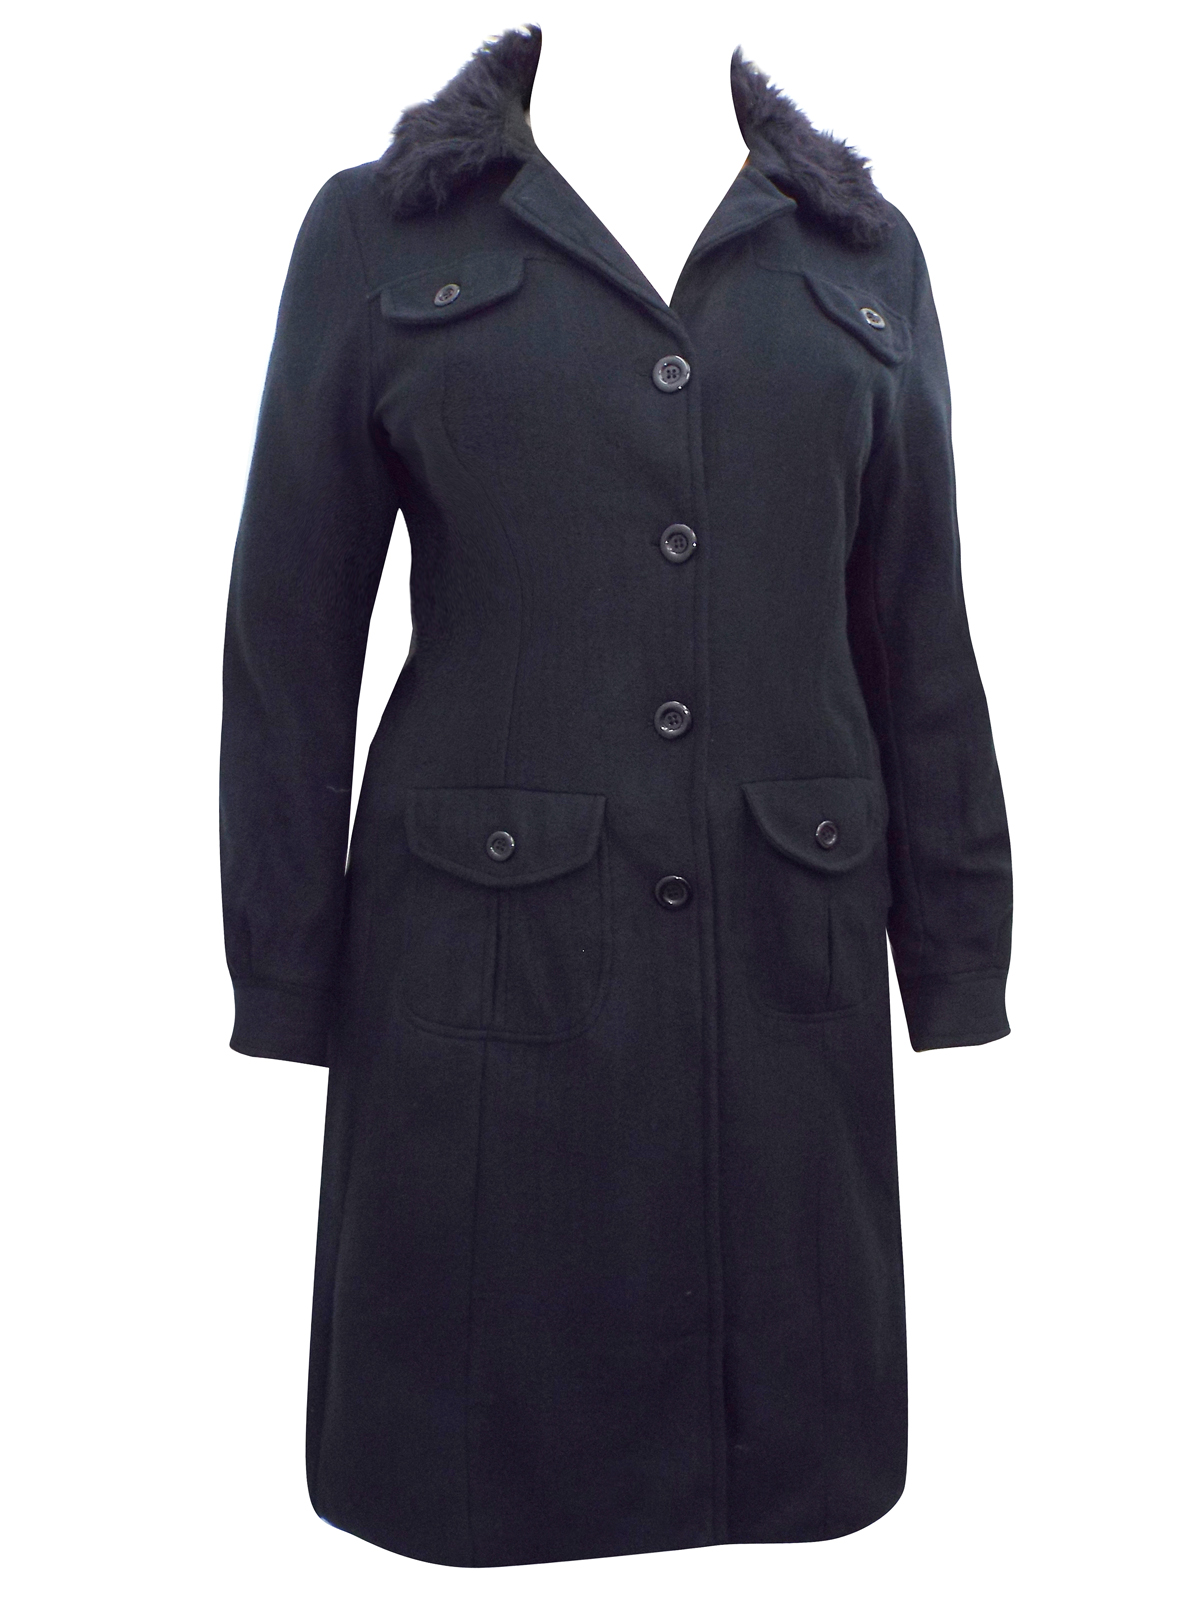 3SUISSES - - 3SUISSES BLACK Faux Fur Collared Long Coat - Plus Size 14/ ...